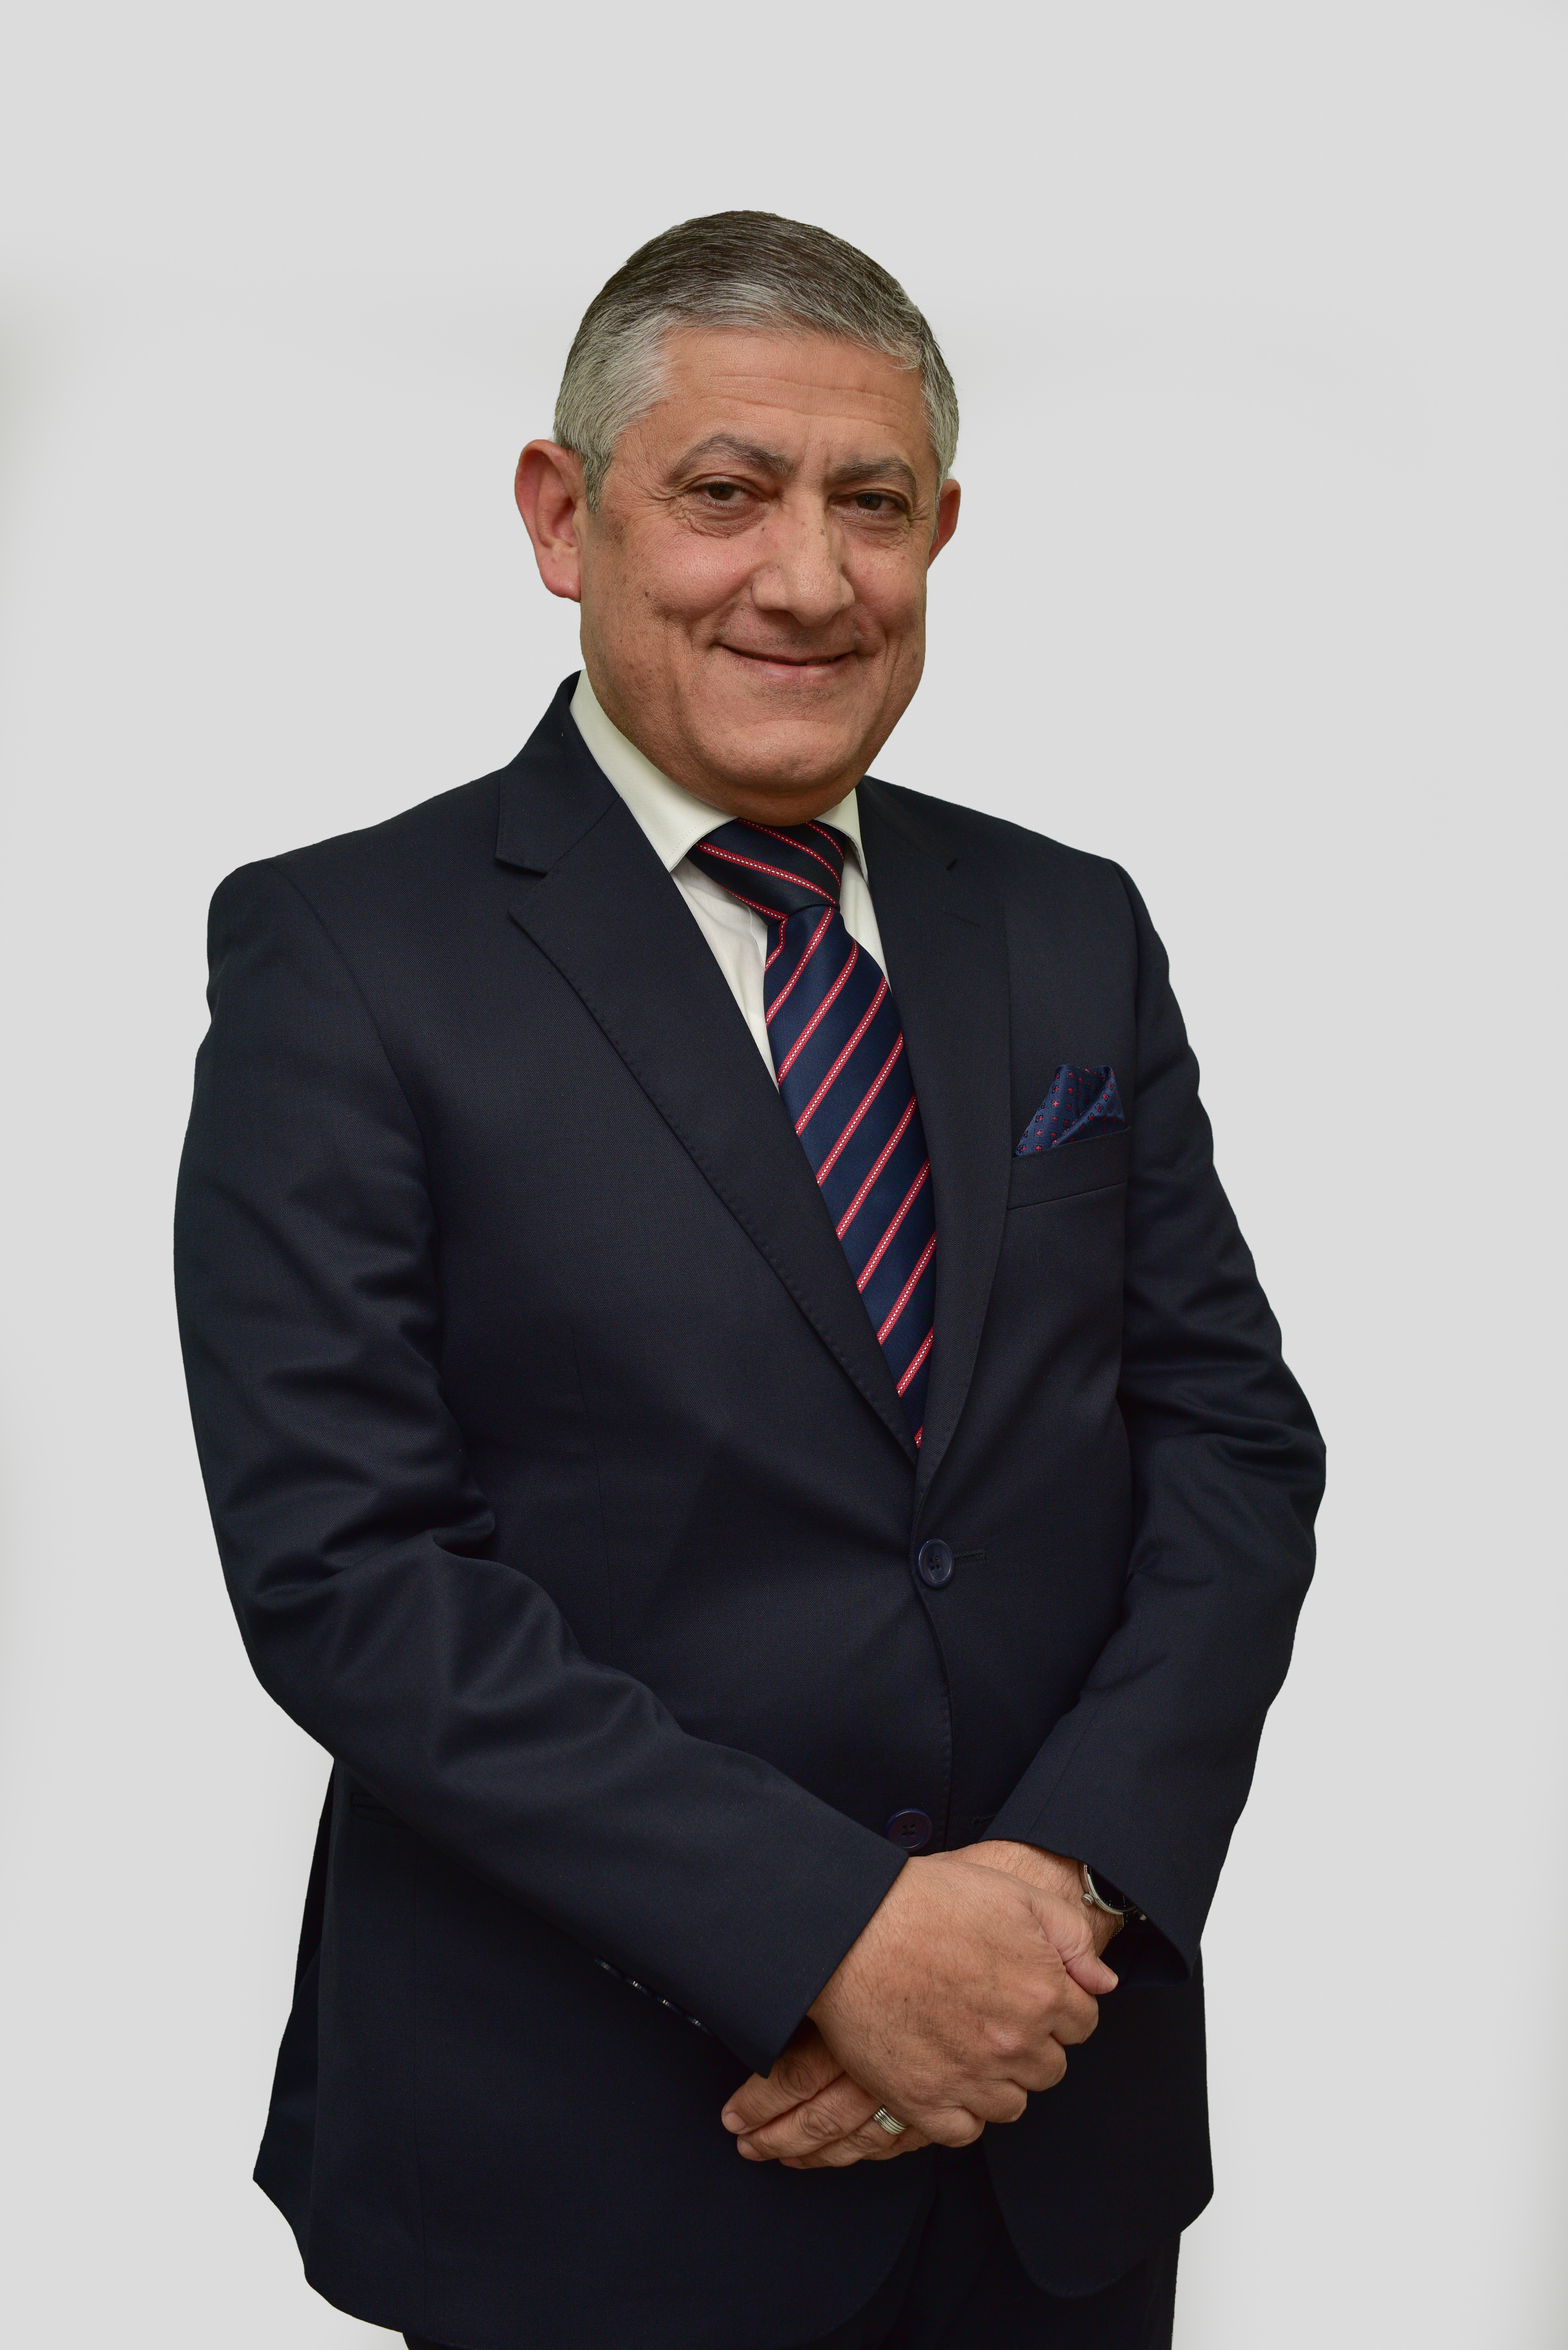 Mr. Walid Muhi Eddin Al Samhouri